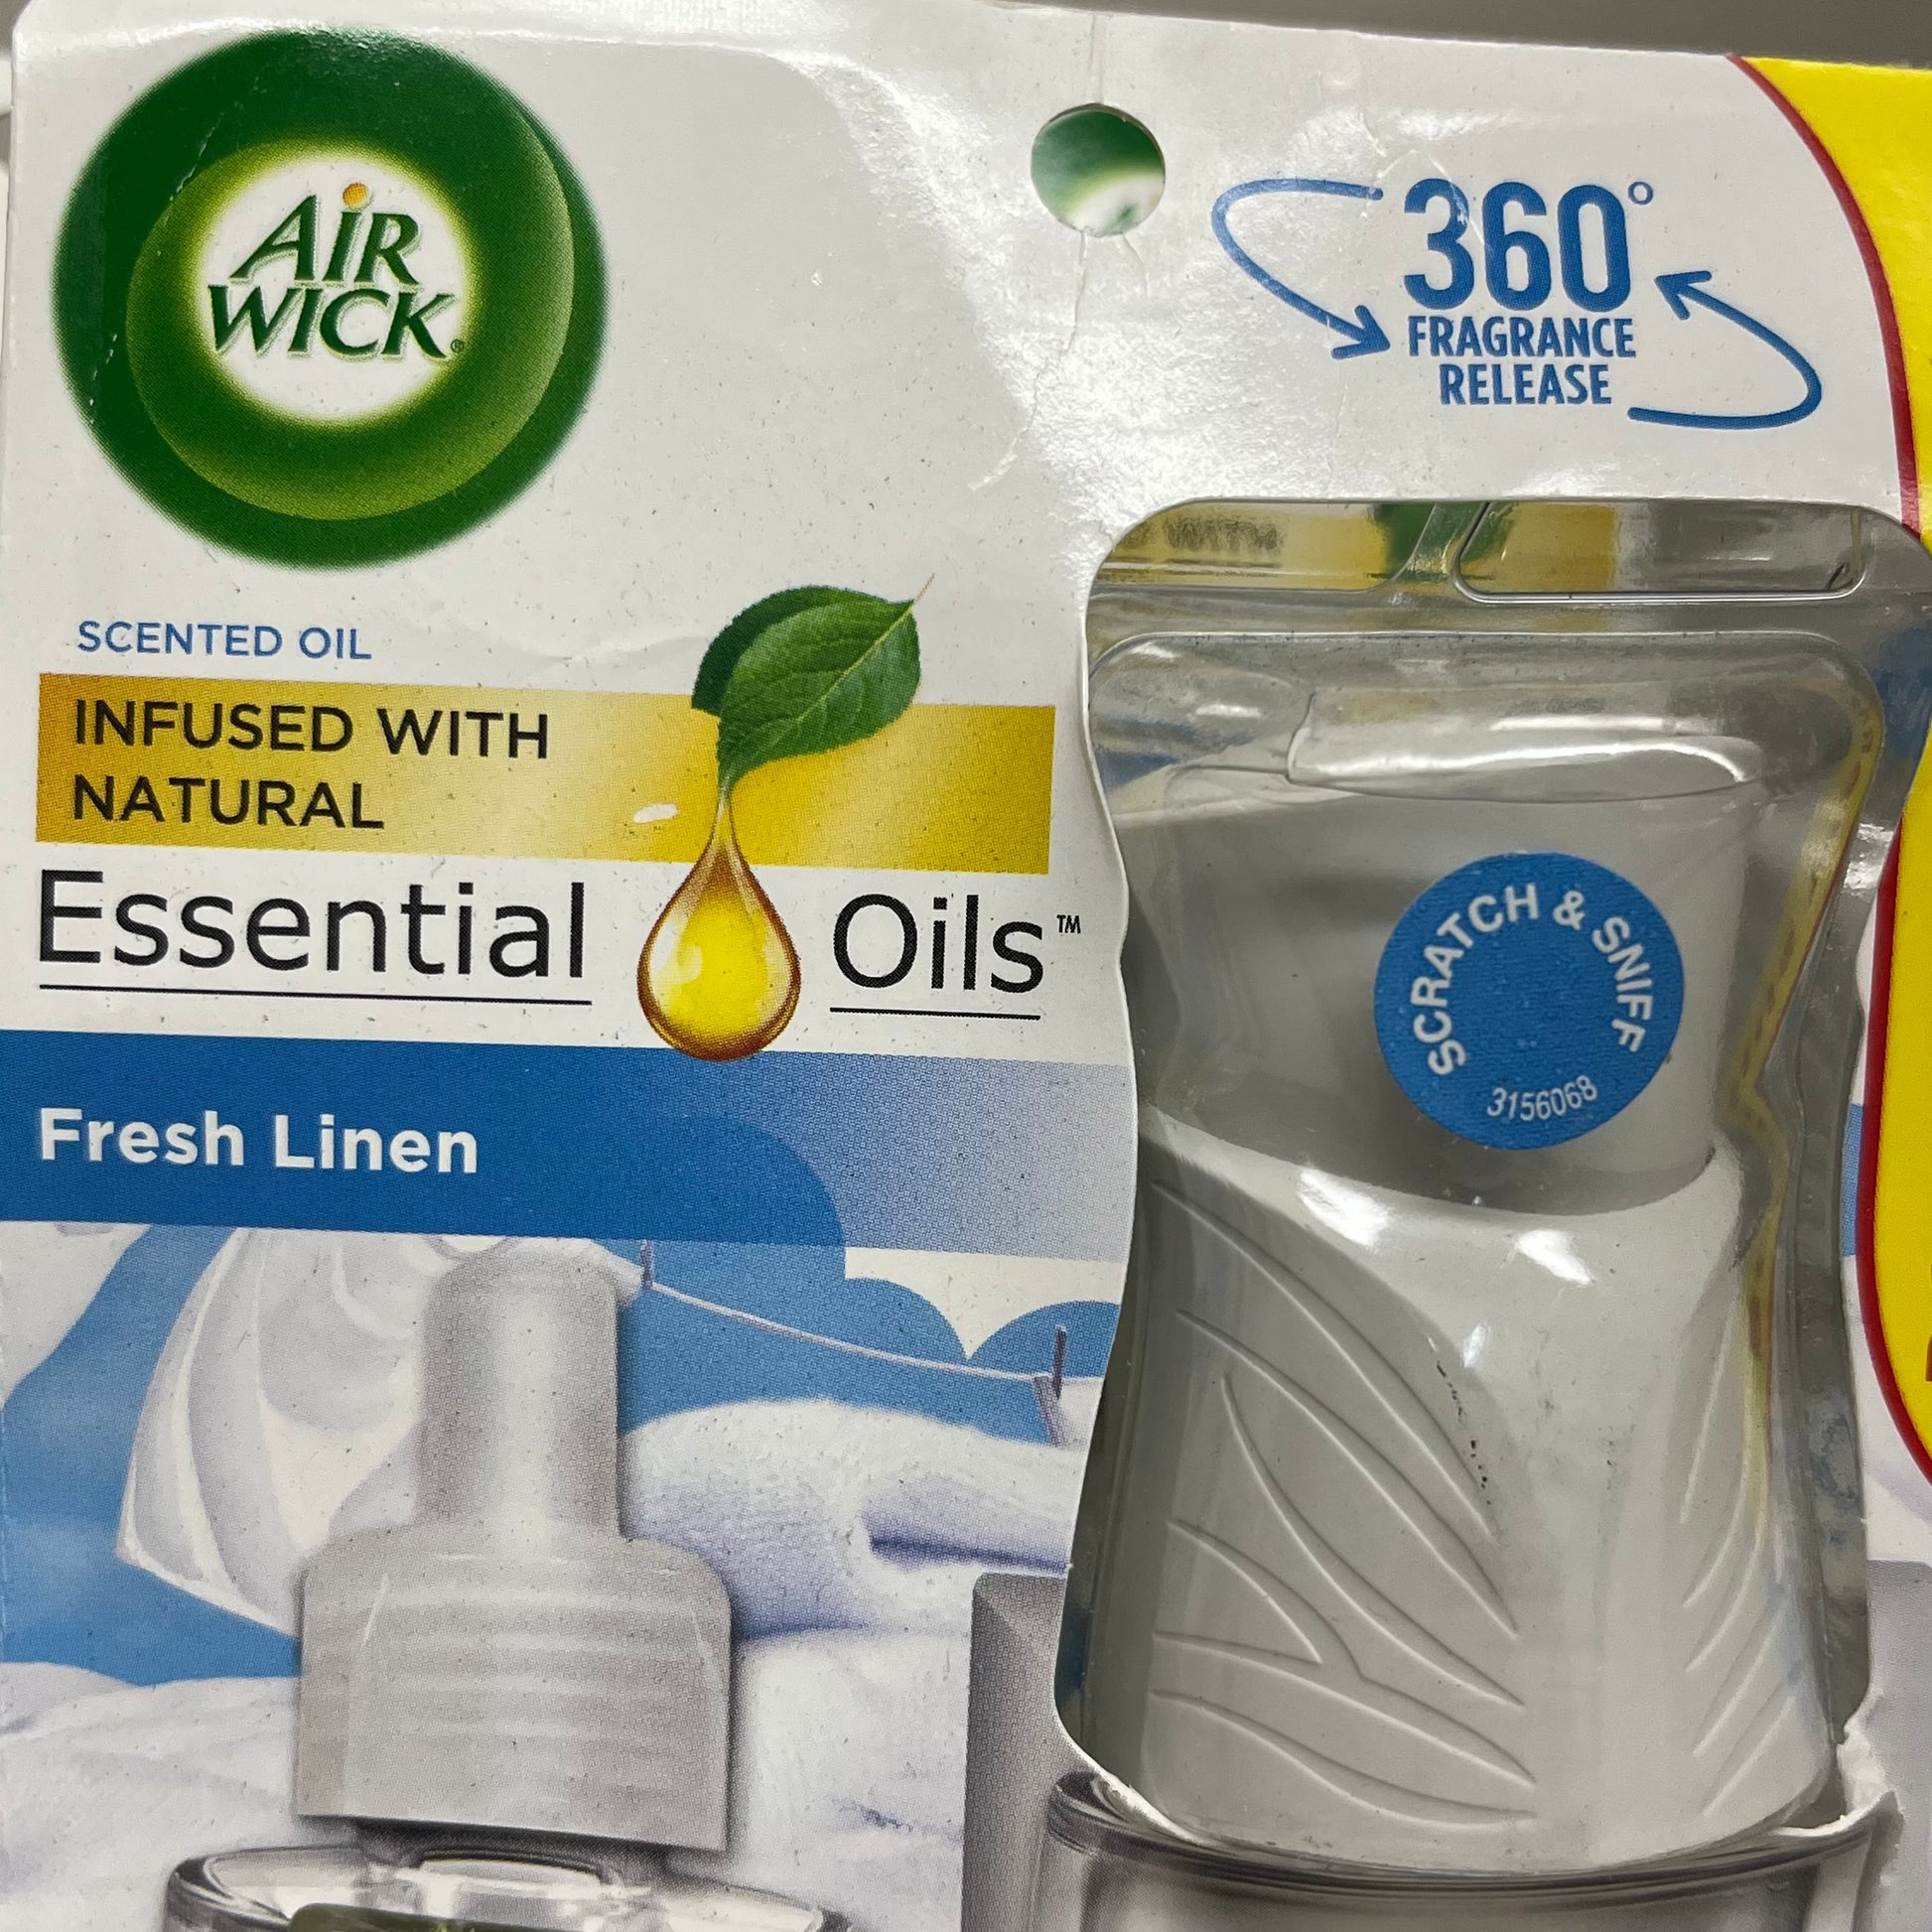 8~Air Wick Fresh Linen Essential Oil Refills .67 oz each